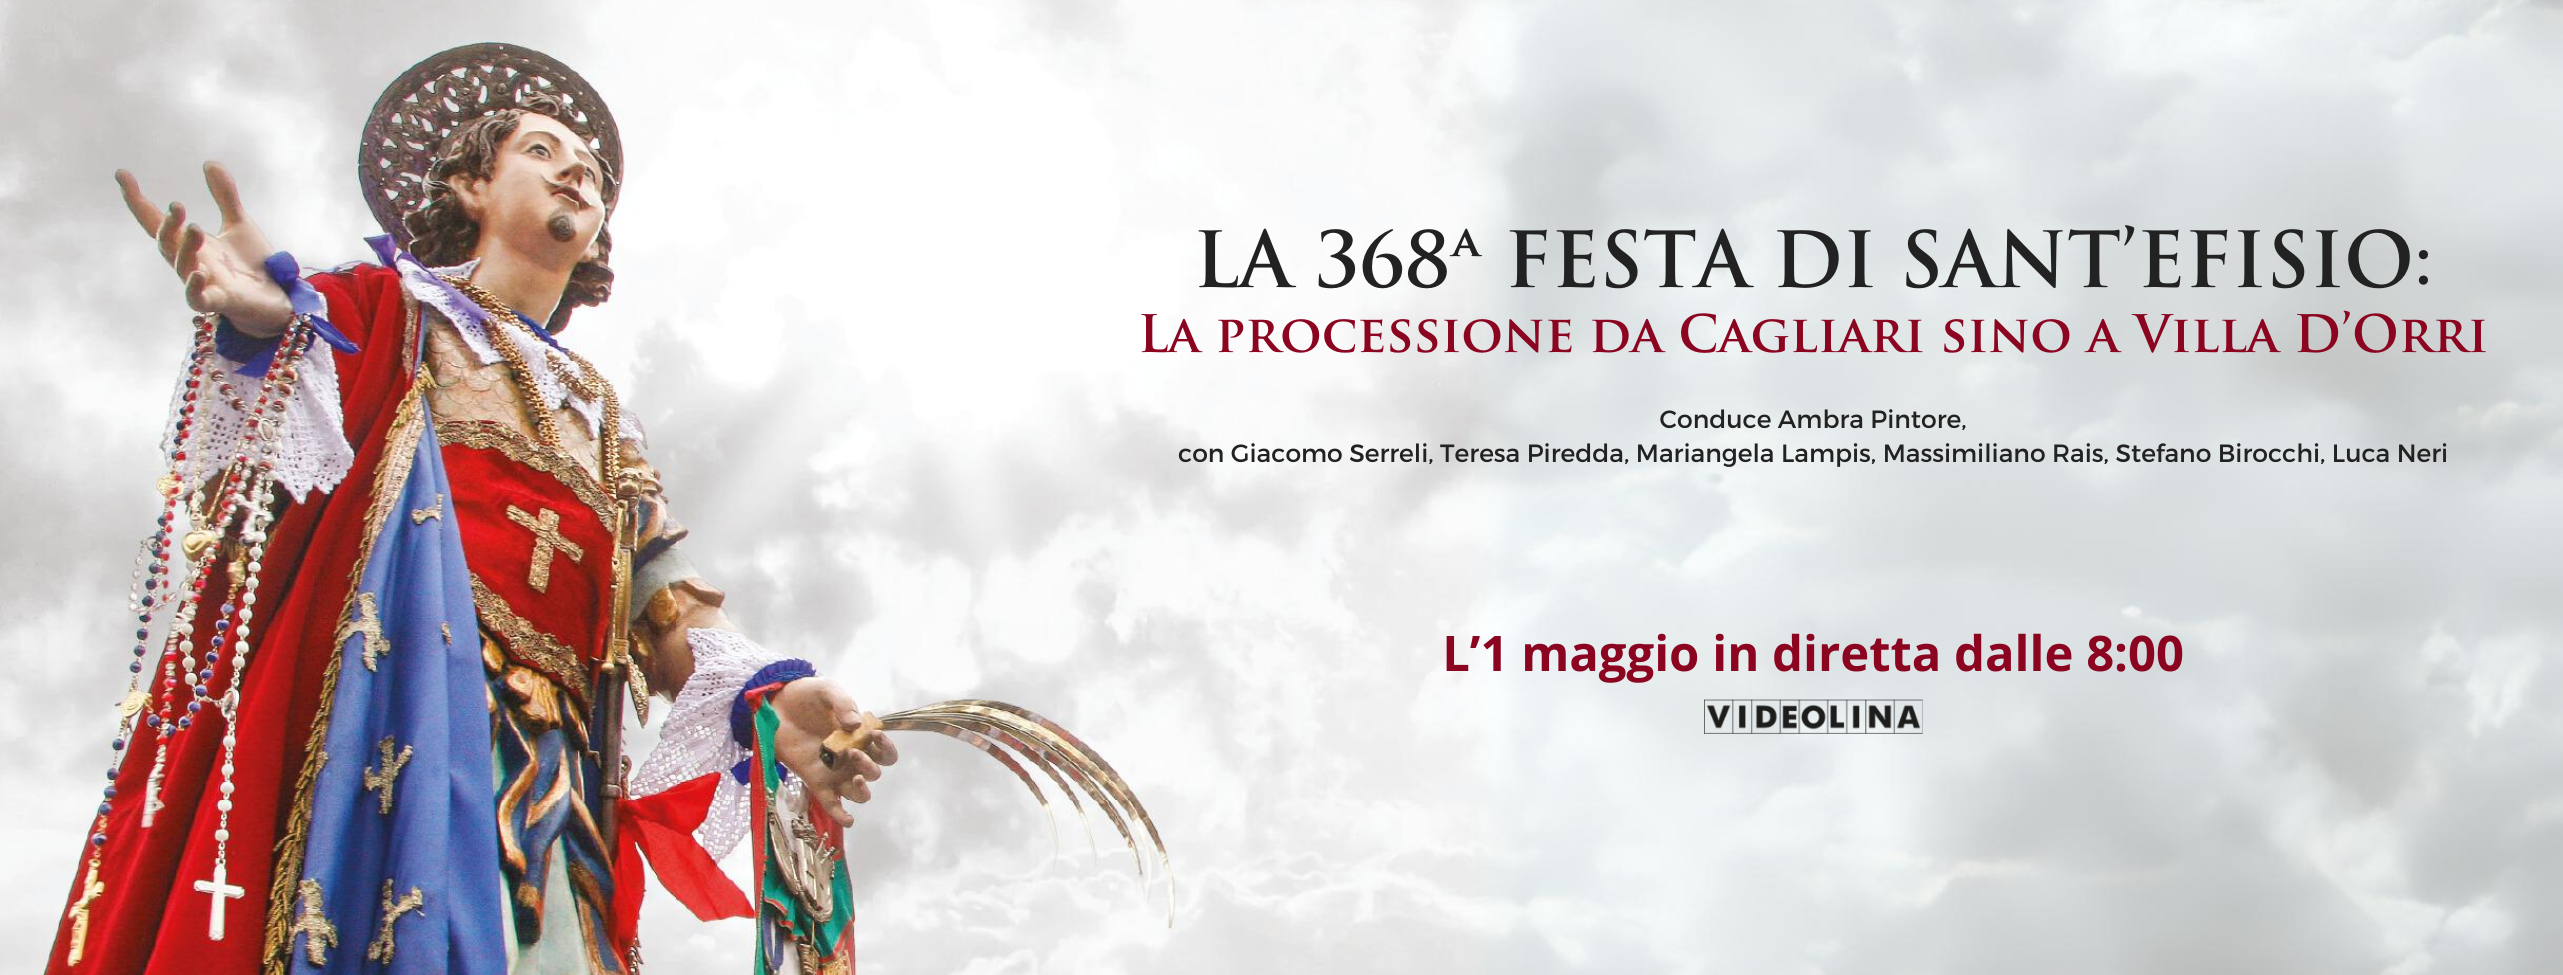 Cagliari. Per Sant’Efisio oltre 2.500 i devoti in costume tradizionale, 270 i cavalli